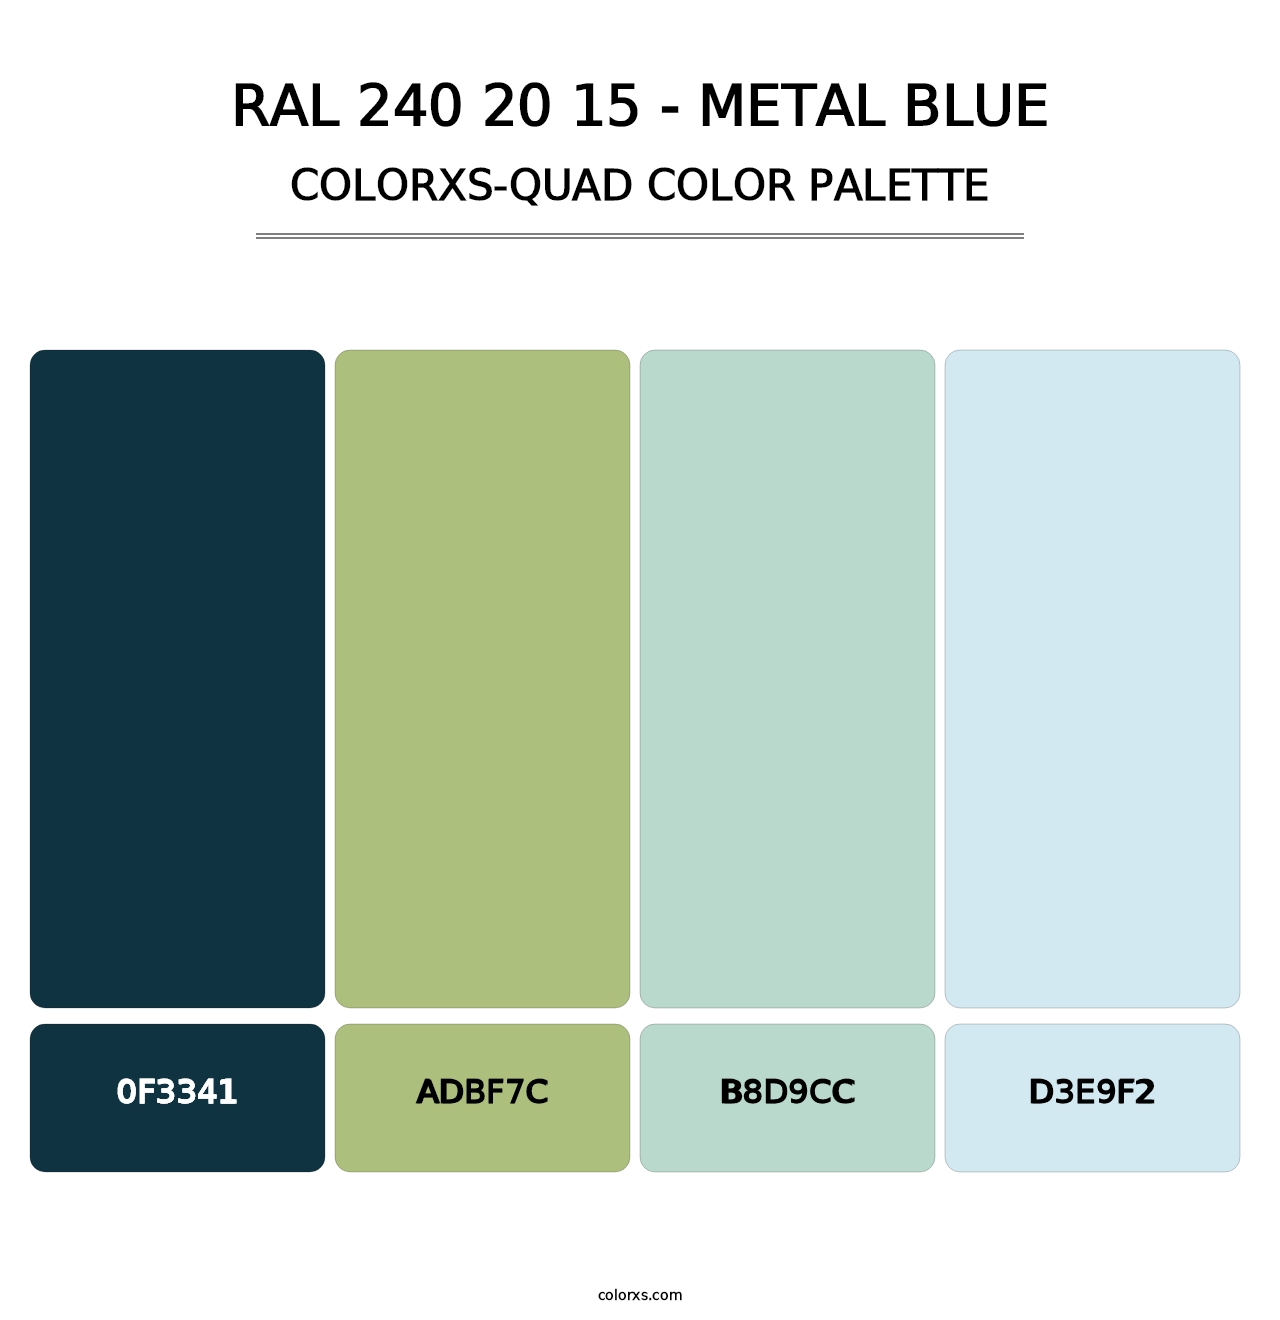 RAL 240 20 15 - Metal Blue - Colorxs Quad Palette